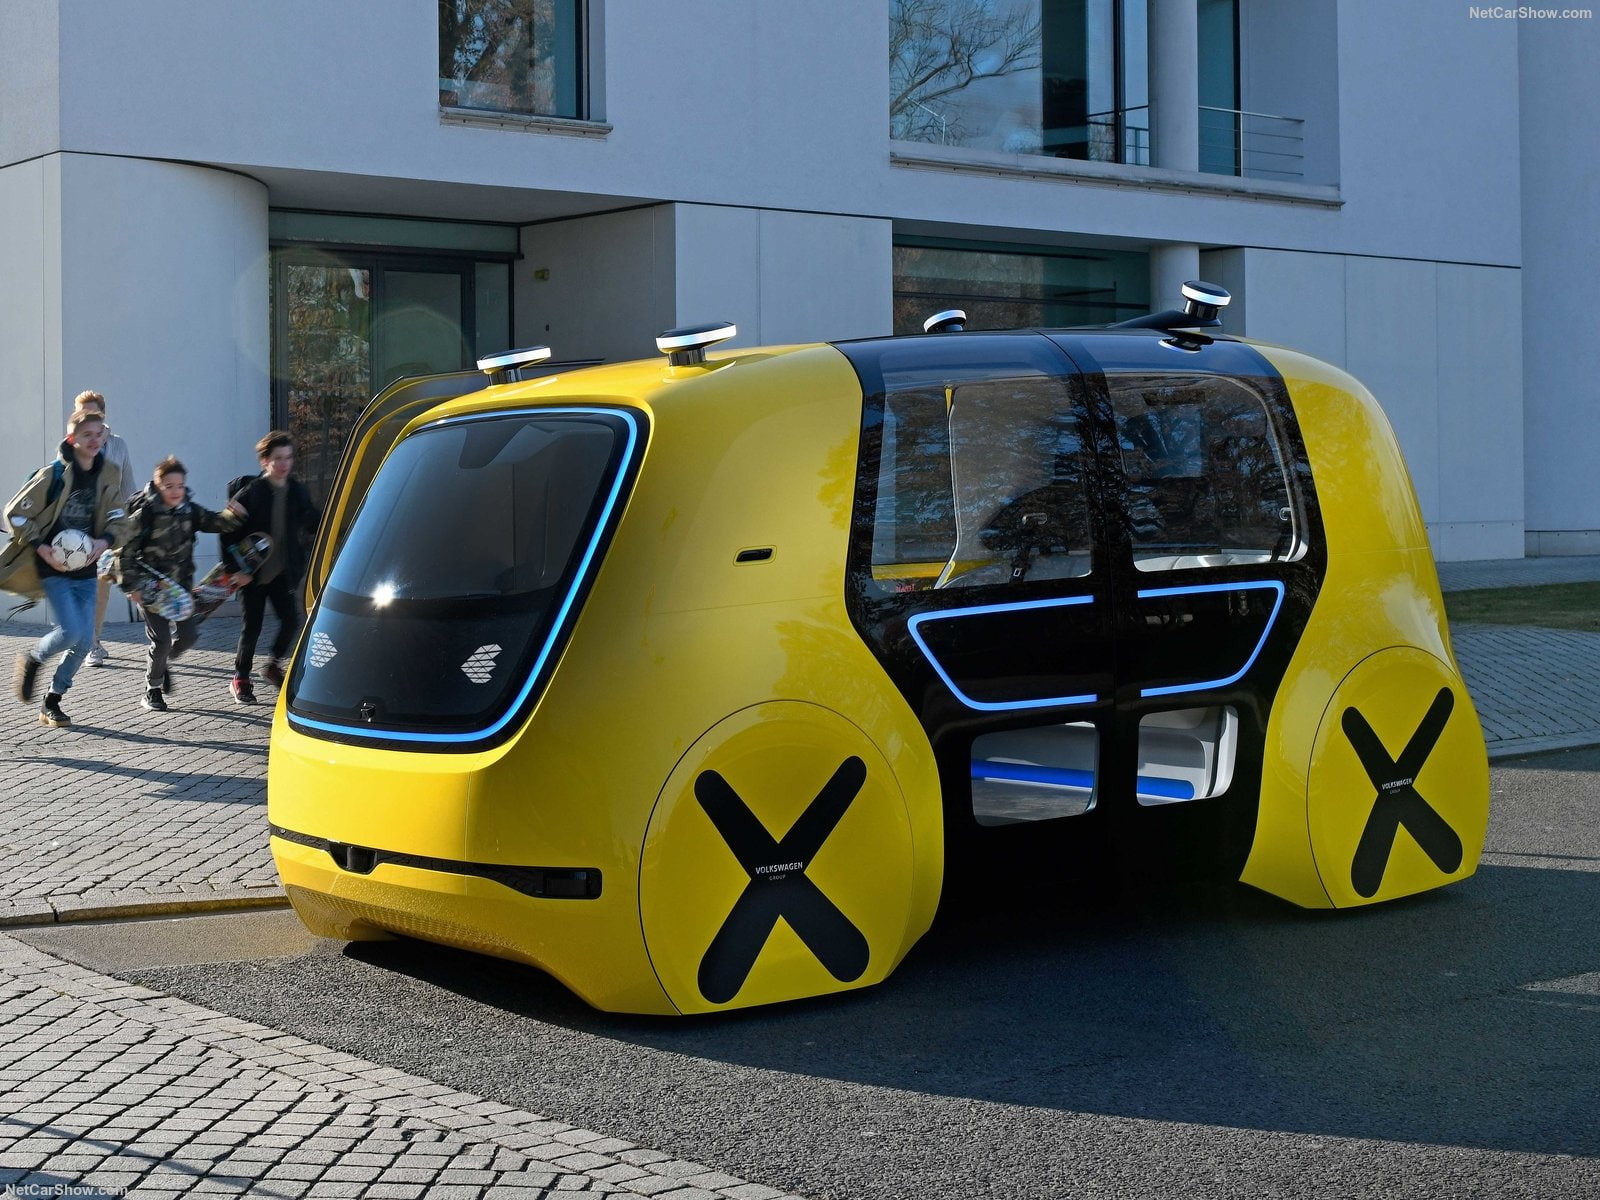 2018 Volkswagen Sedric School Bus Concept, Transport